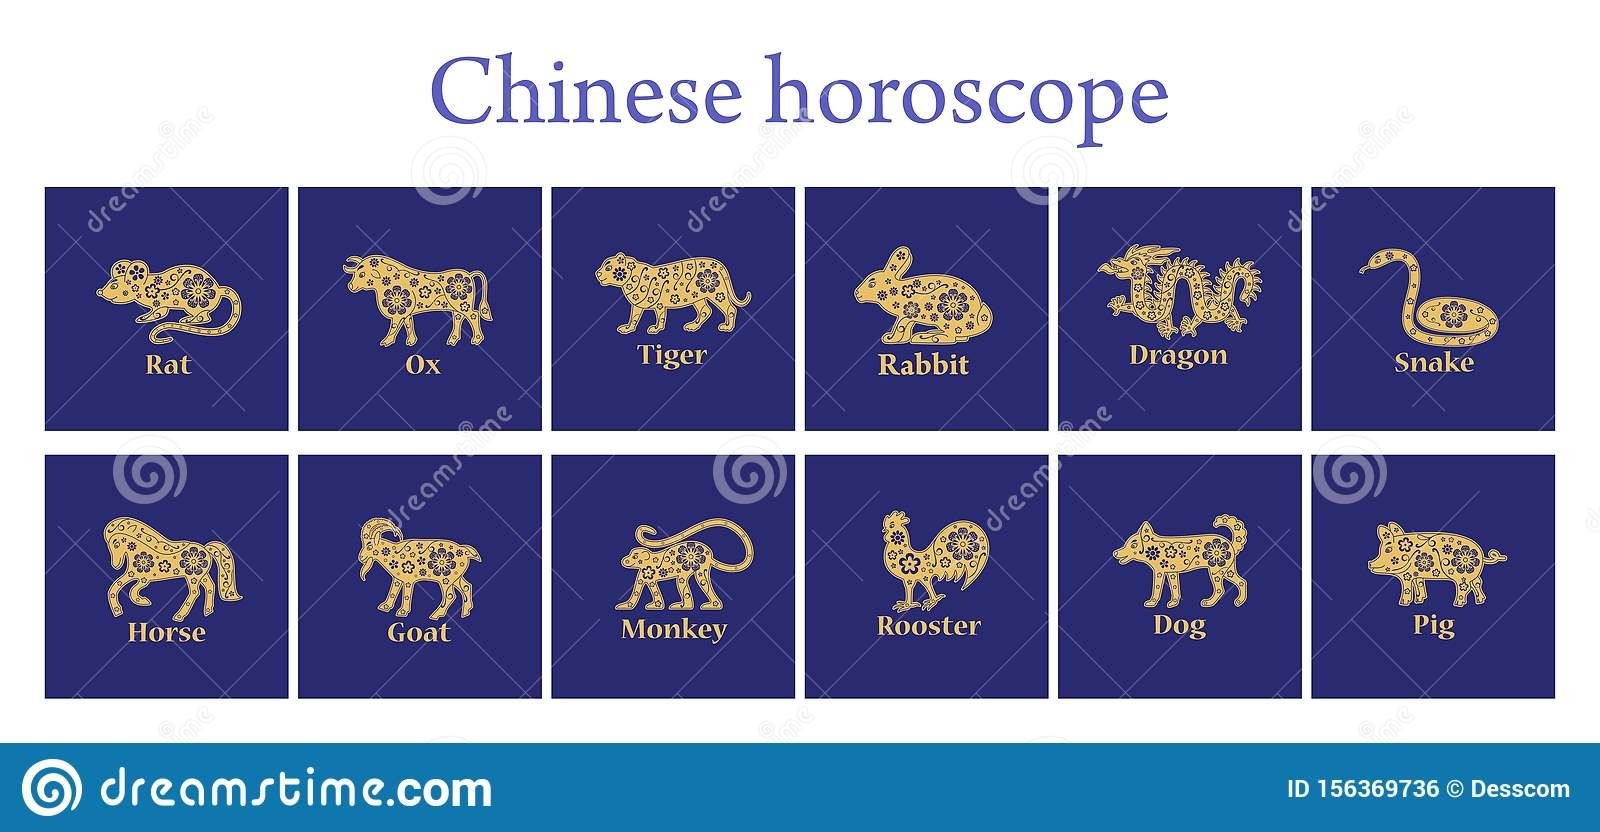 Chinese Horoscope 2020, 2021, 2022, 2023, 2024, 2025, 2026